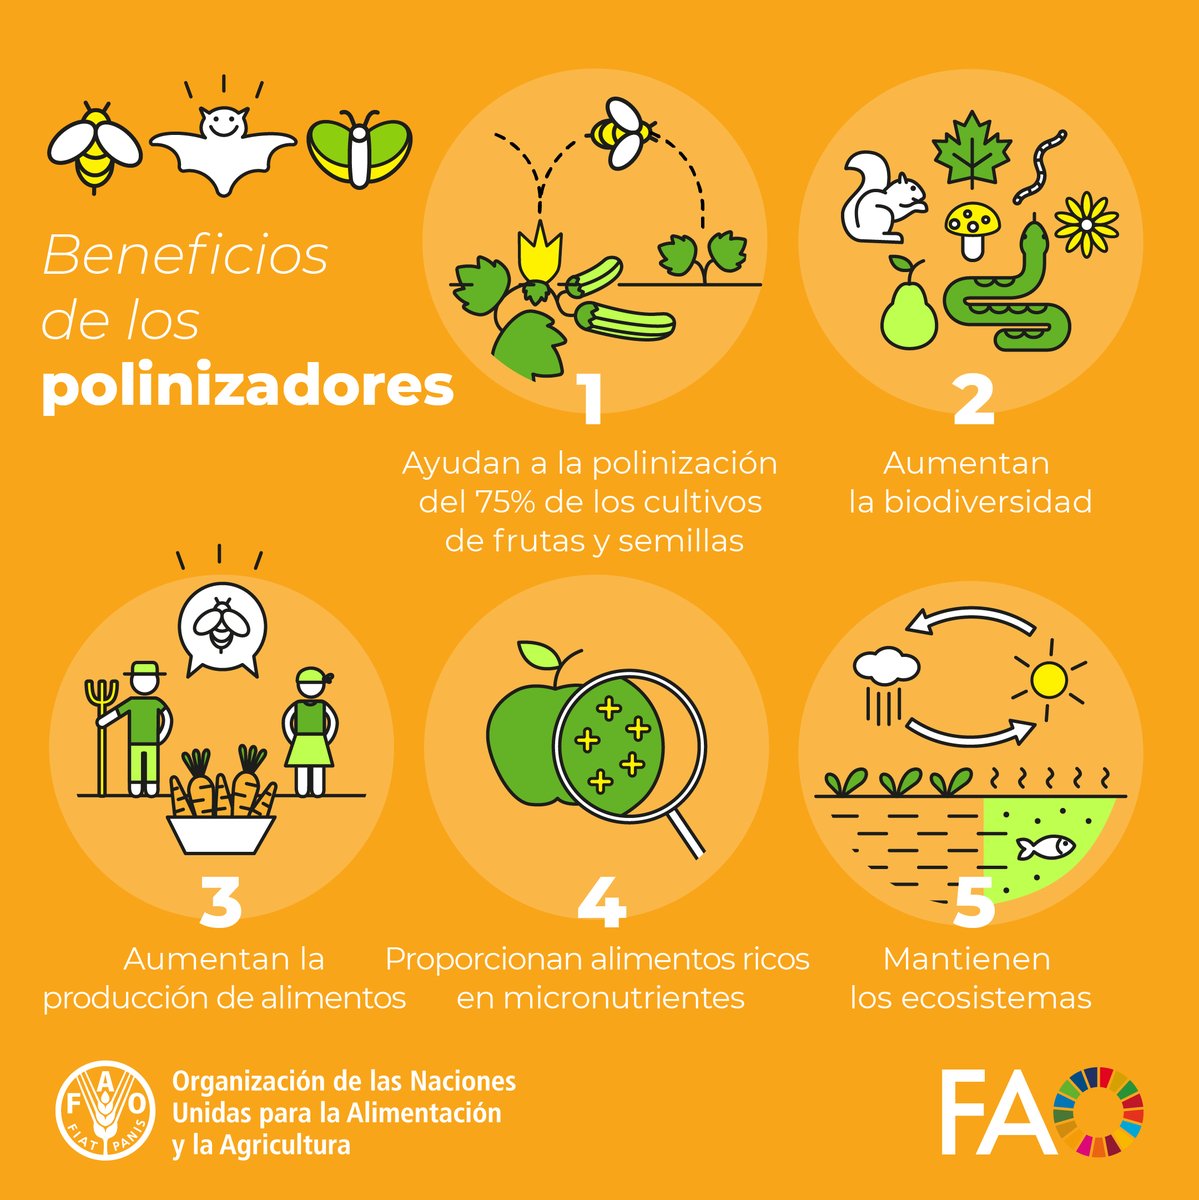 🐝Gracias a las abejas y otros polinizadores tenemos... ✅Más alimentos ✅Mejores alimentos ✅Más biodiversidad Aquí hay 5⃣razones por los que debemos protegerlos👇 #DíaMundialDeLasAbejas